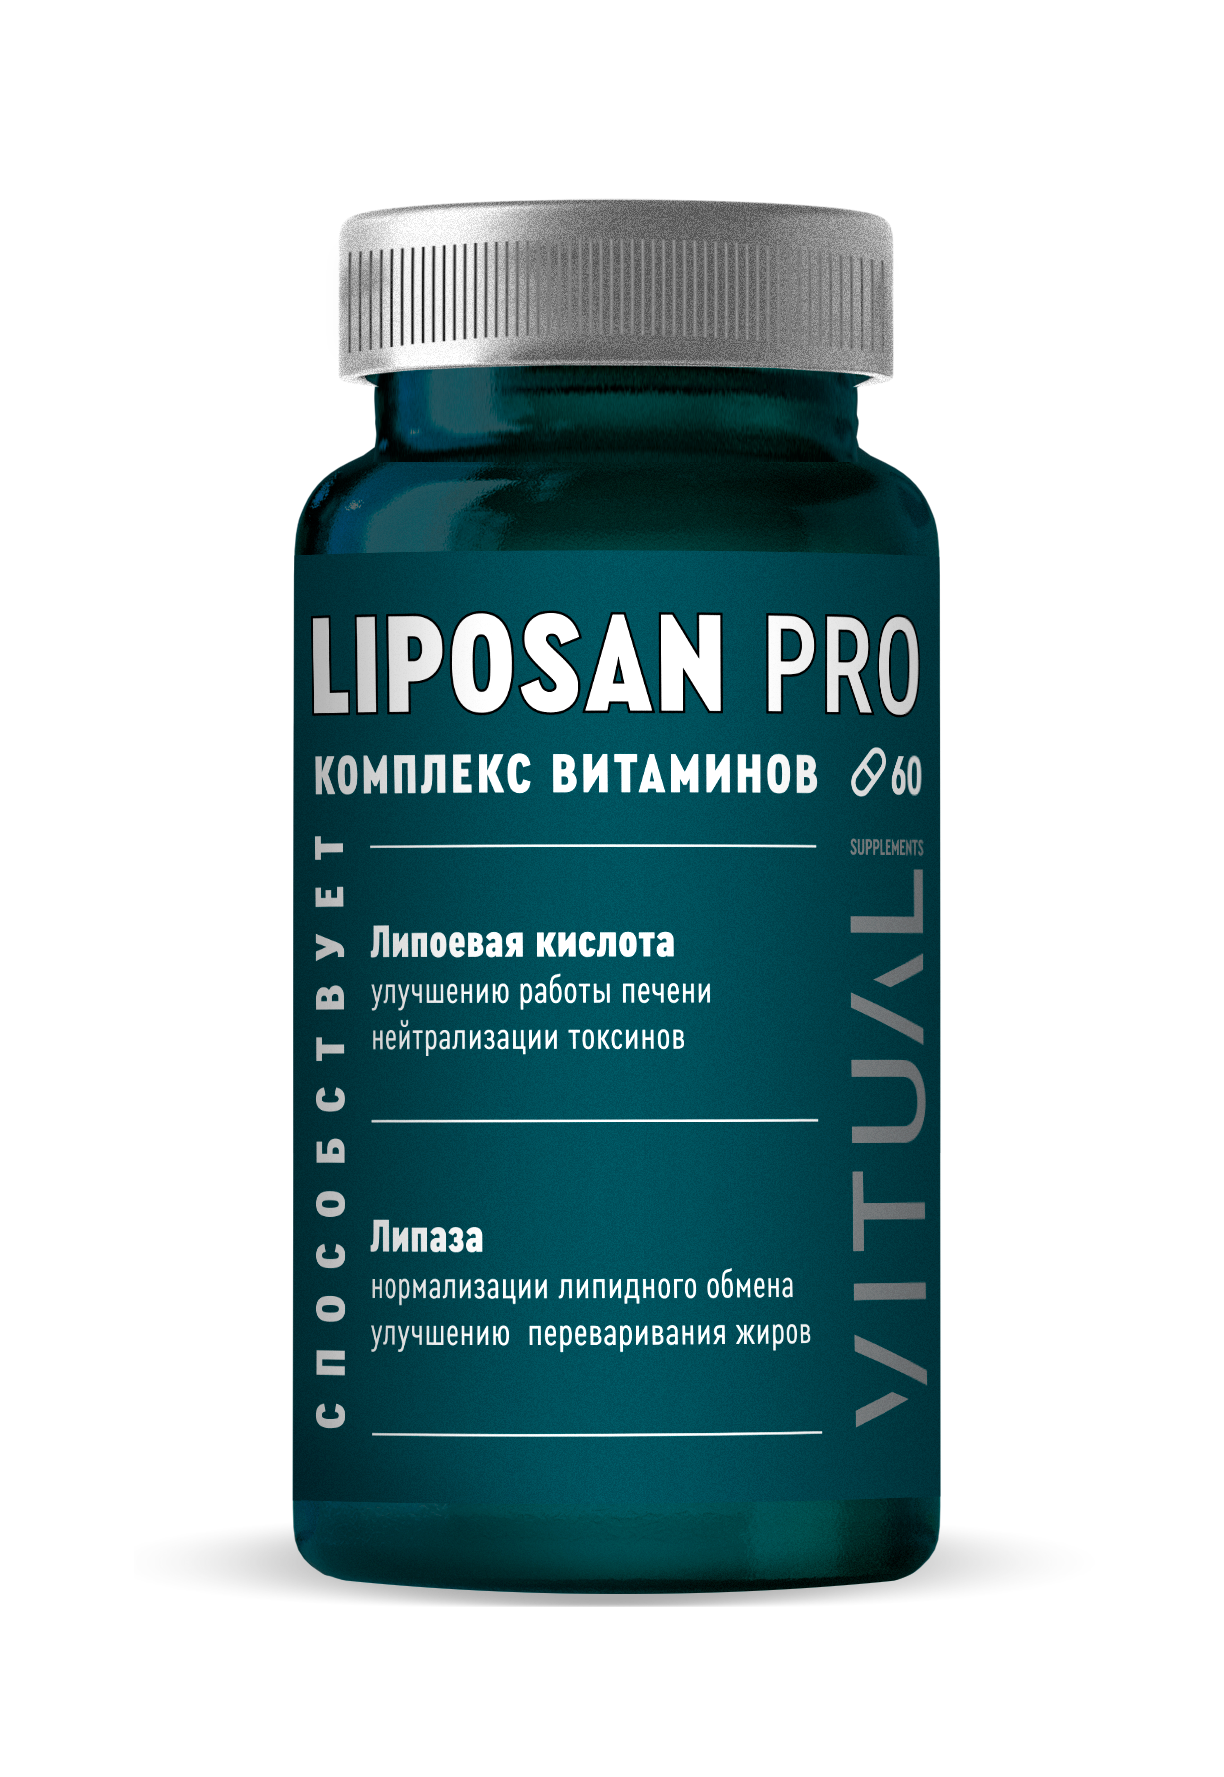 Liposan Pro